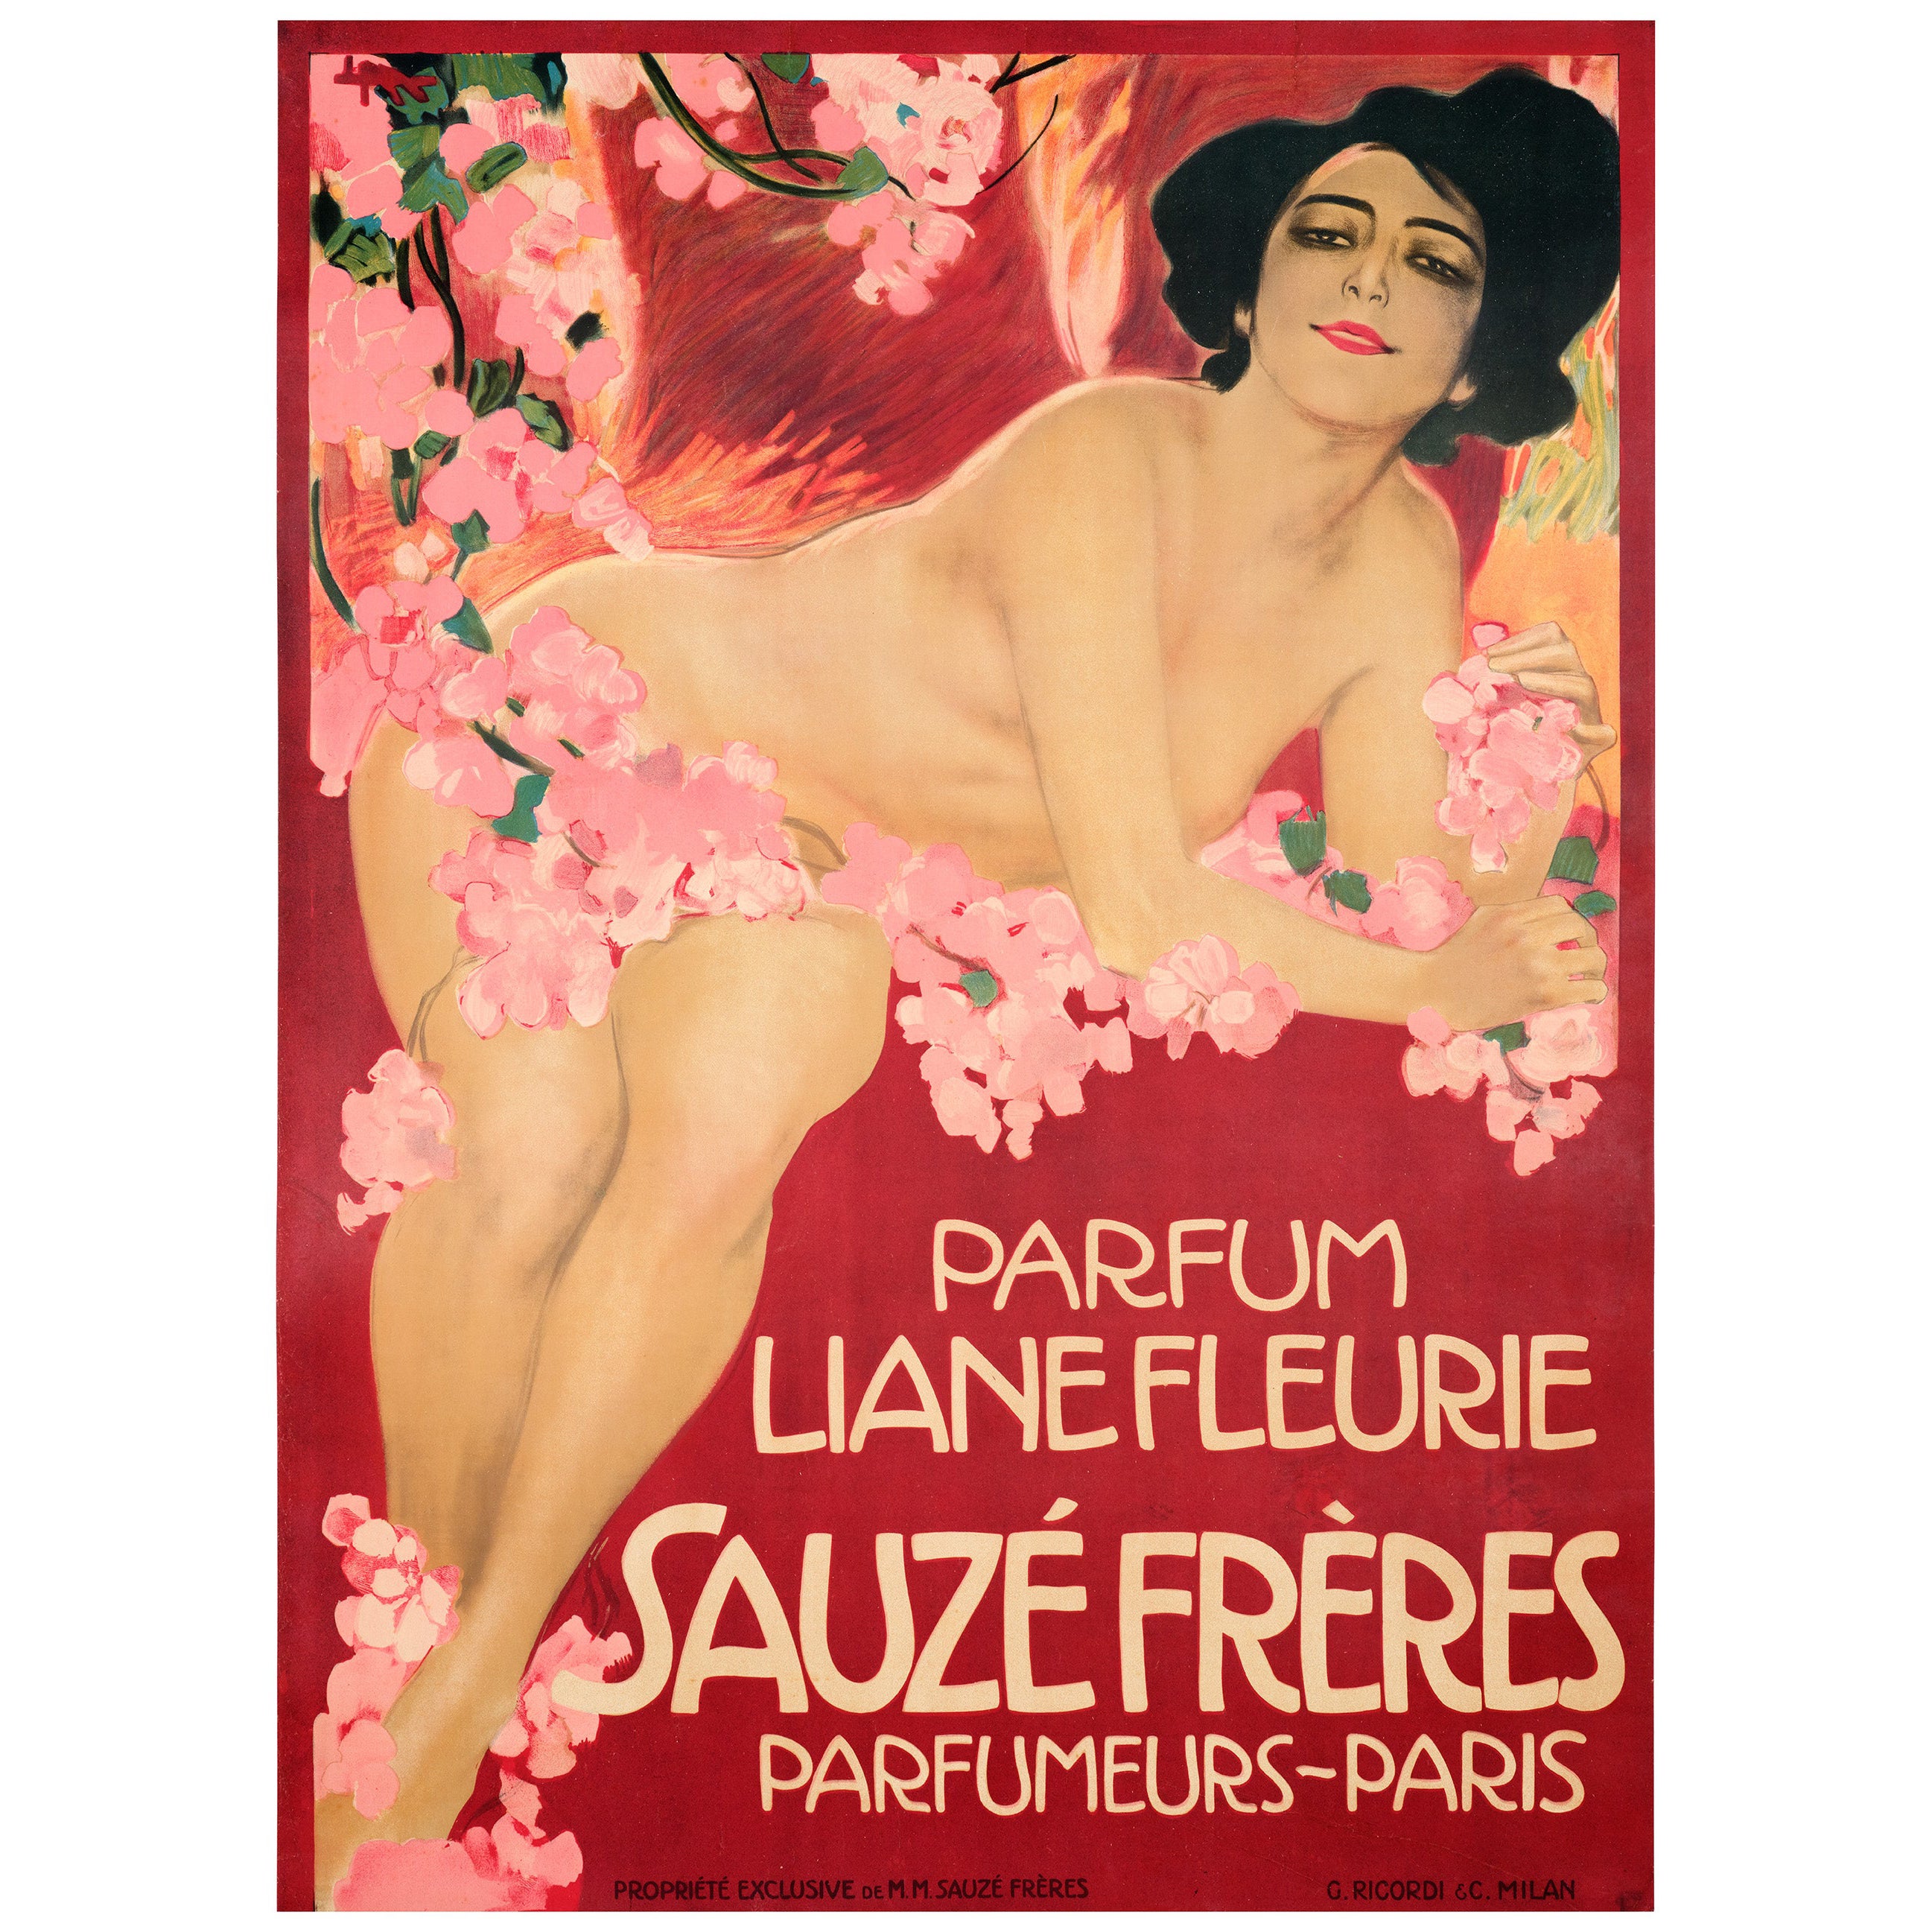 Metlicovitz, affiche originale Art Nouveau, Liane Fleurie Sauze Perfume Paris 1910 en vente